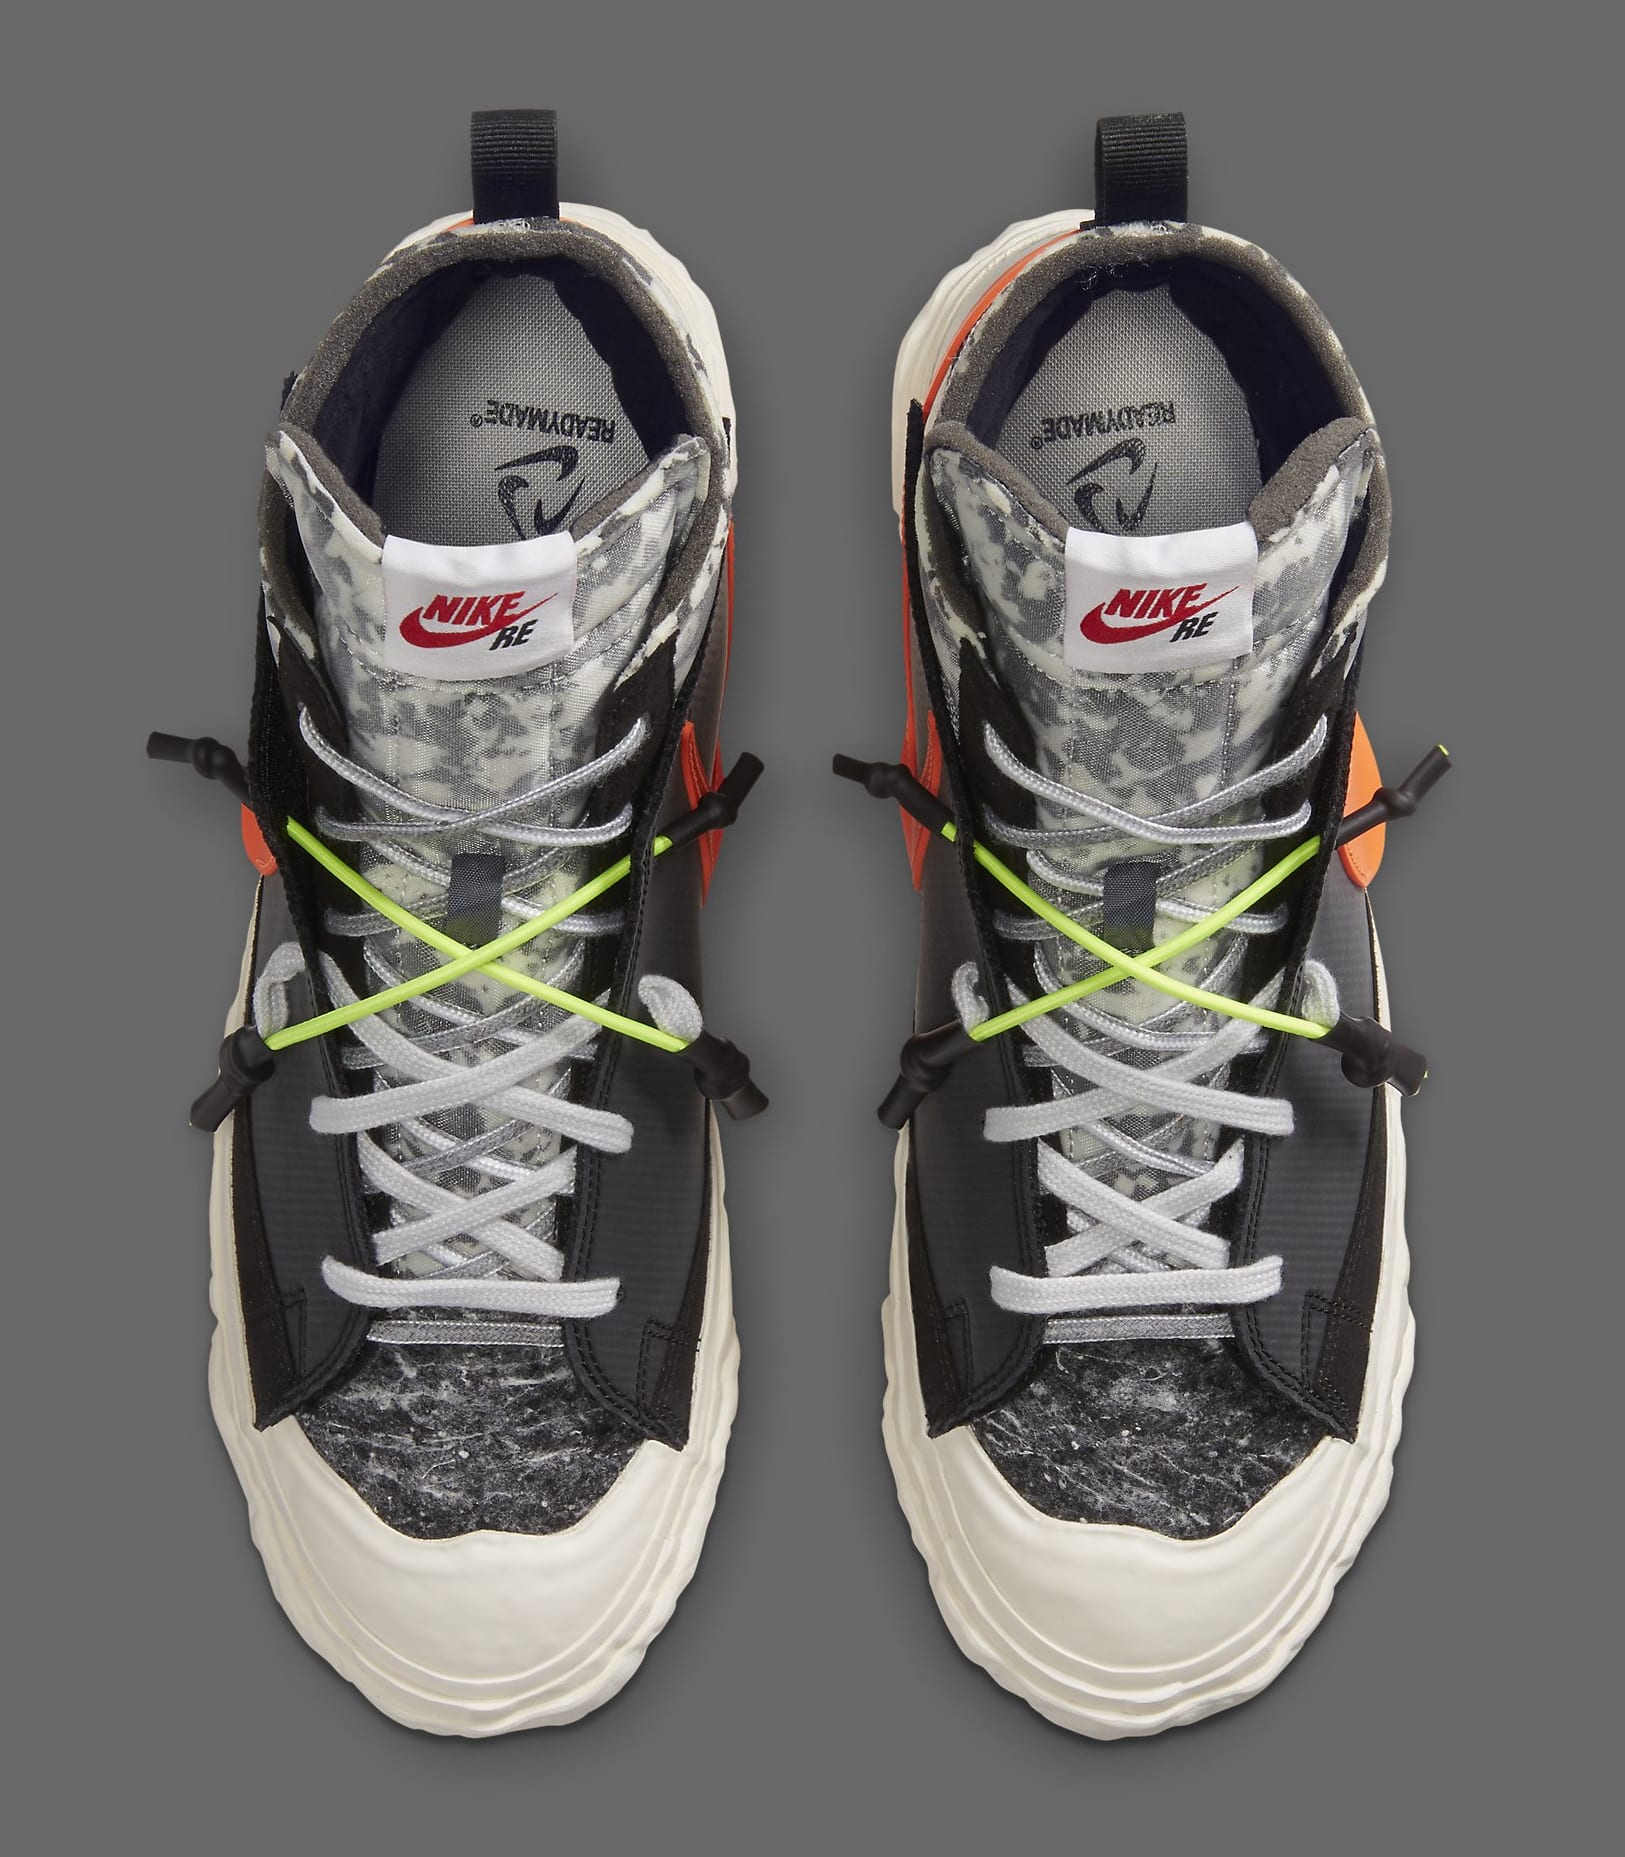 Readymade x Nike Blazer Mid CZ3589-001 Top